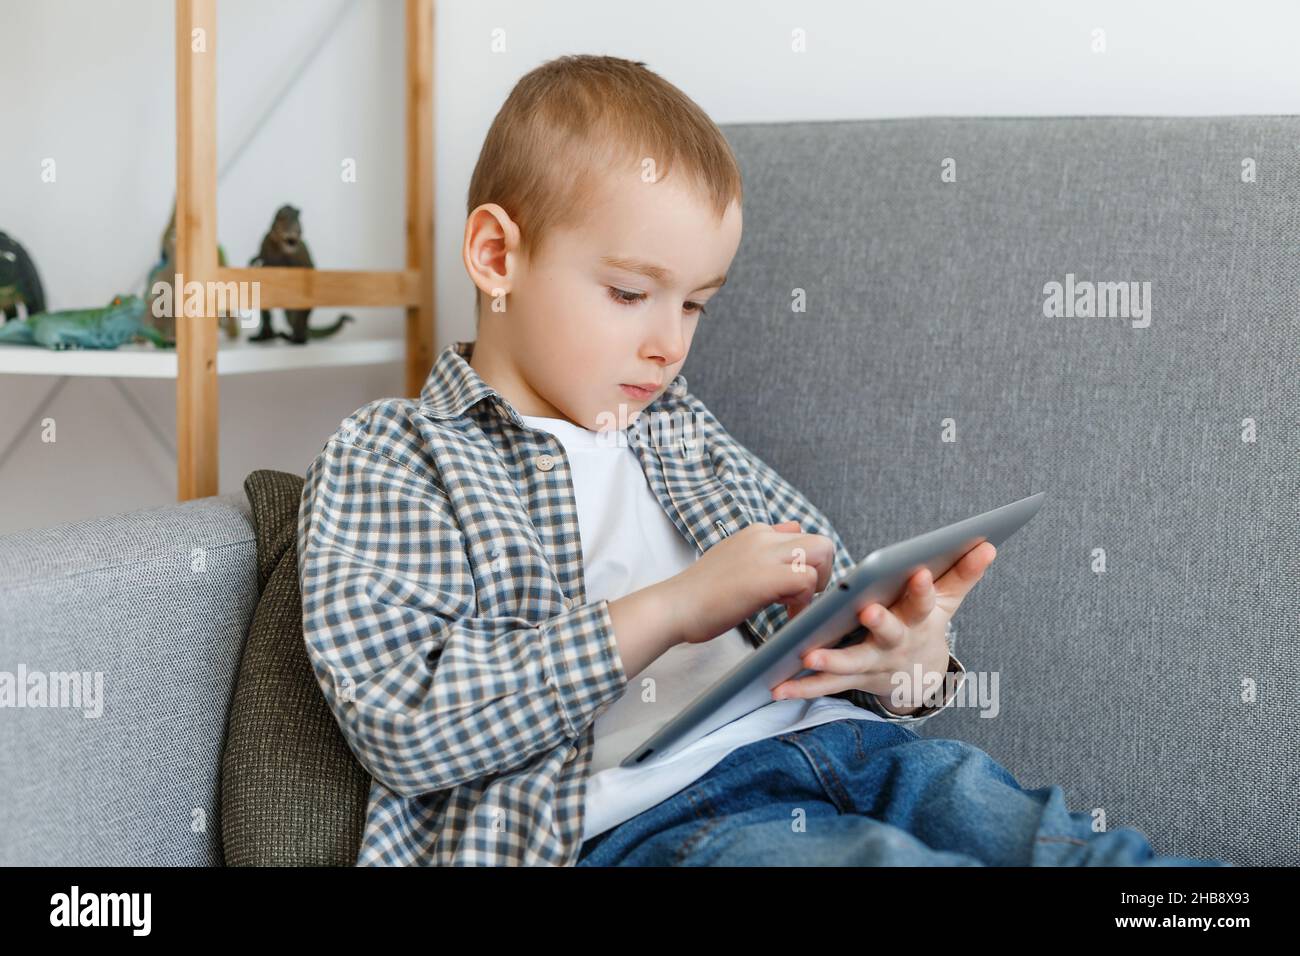 Junge ohne elterliche Kontrolle verschwenden Zeit spielen. Kind hat Spaß mit Tablet. Frühkindliche Bildung und Freizeit im Elementaralter Stockfoto